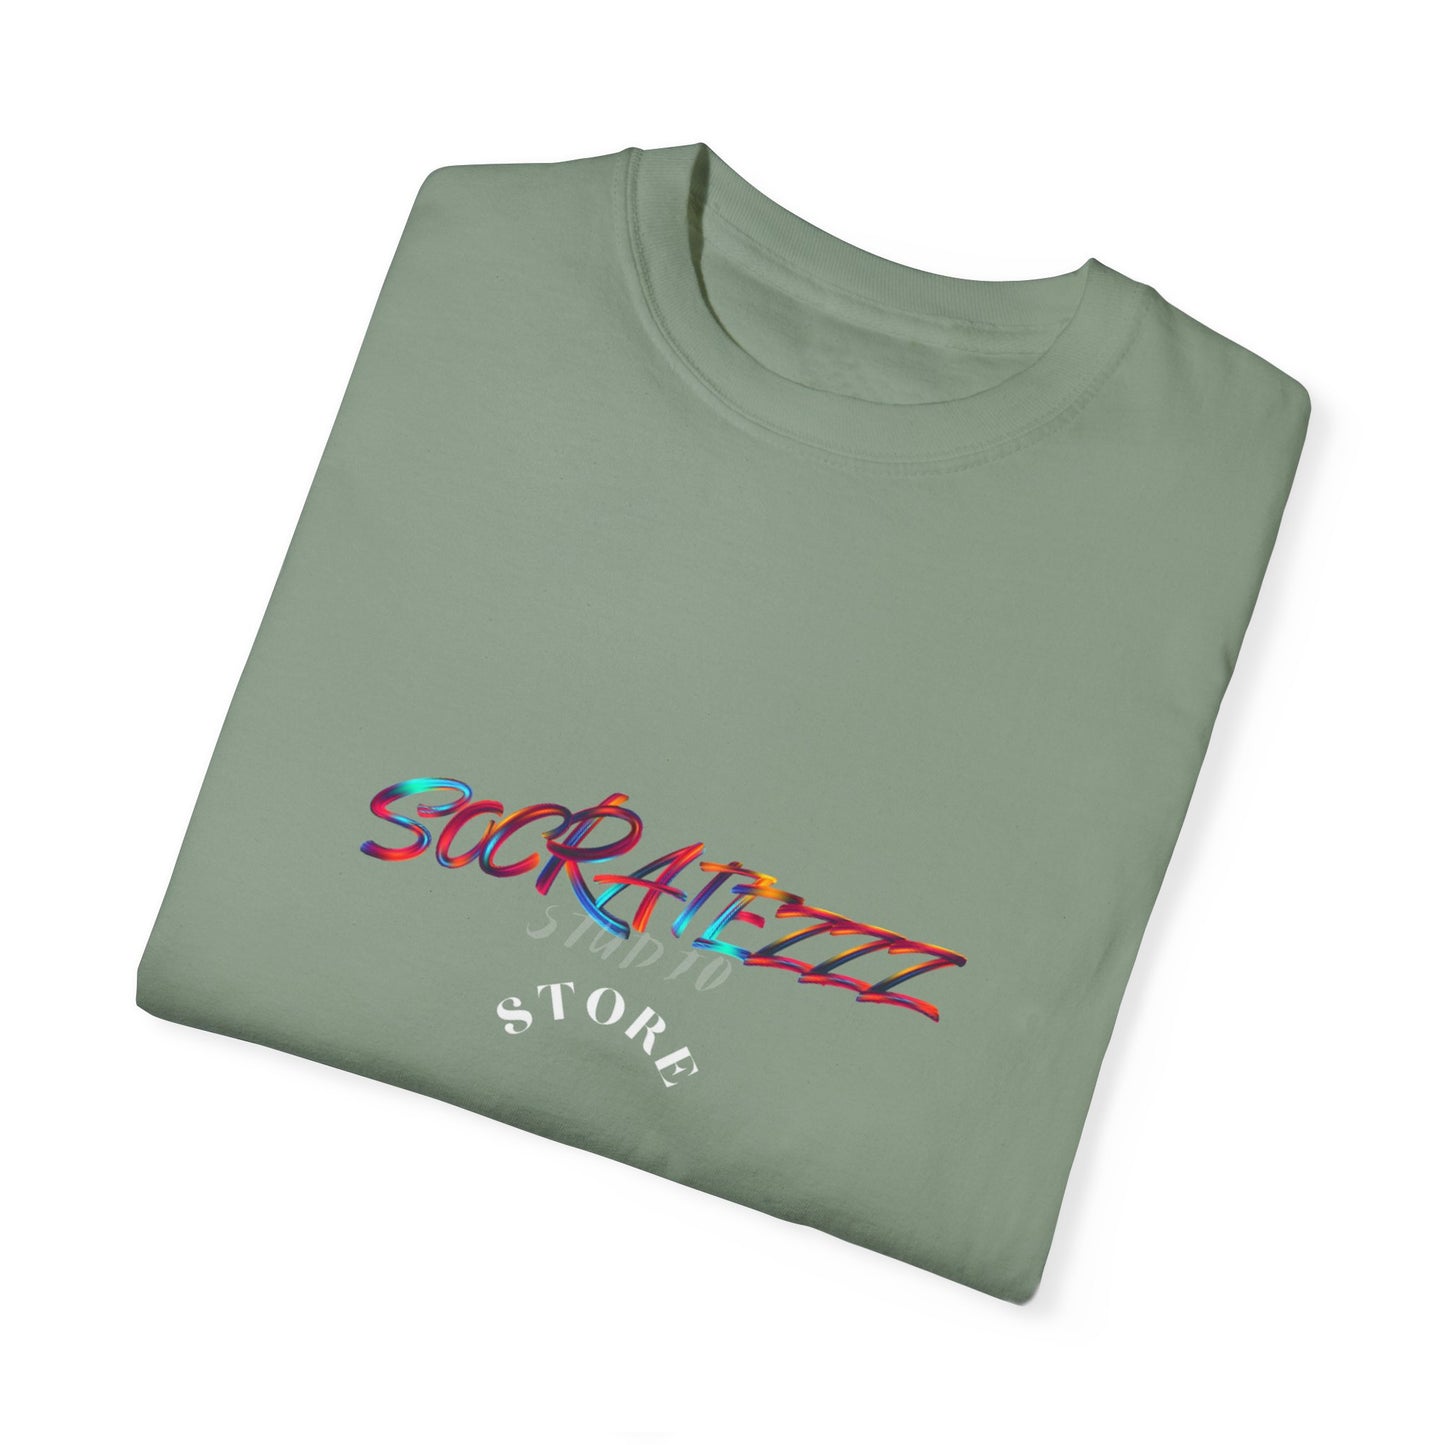 Socratezzz is an Attitude - Unisex Garment-Dyed T-shirt